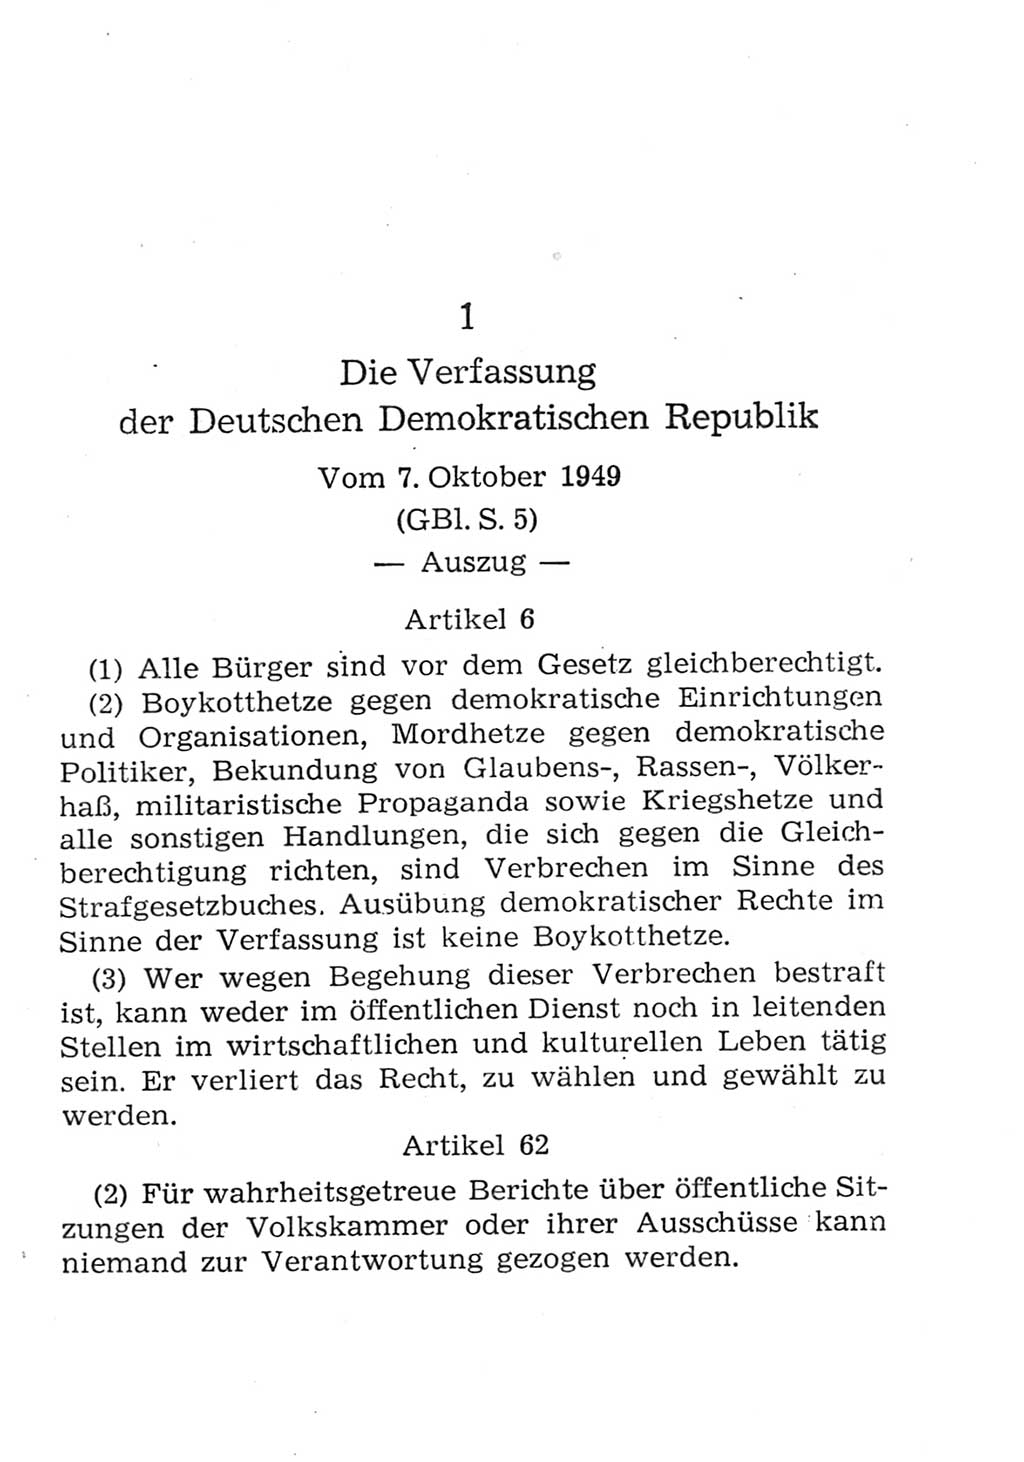 Strafgesetzbuch (StGB) und andere Strafgesetze [Deutsche Demokratische Republik (DDR)] 1957, Seite 187 (StGB Strafges. DDR 1957, S. 187)